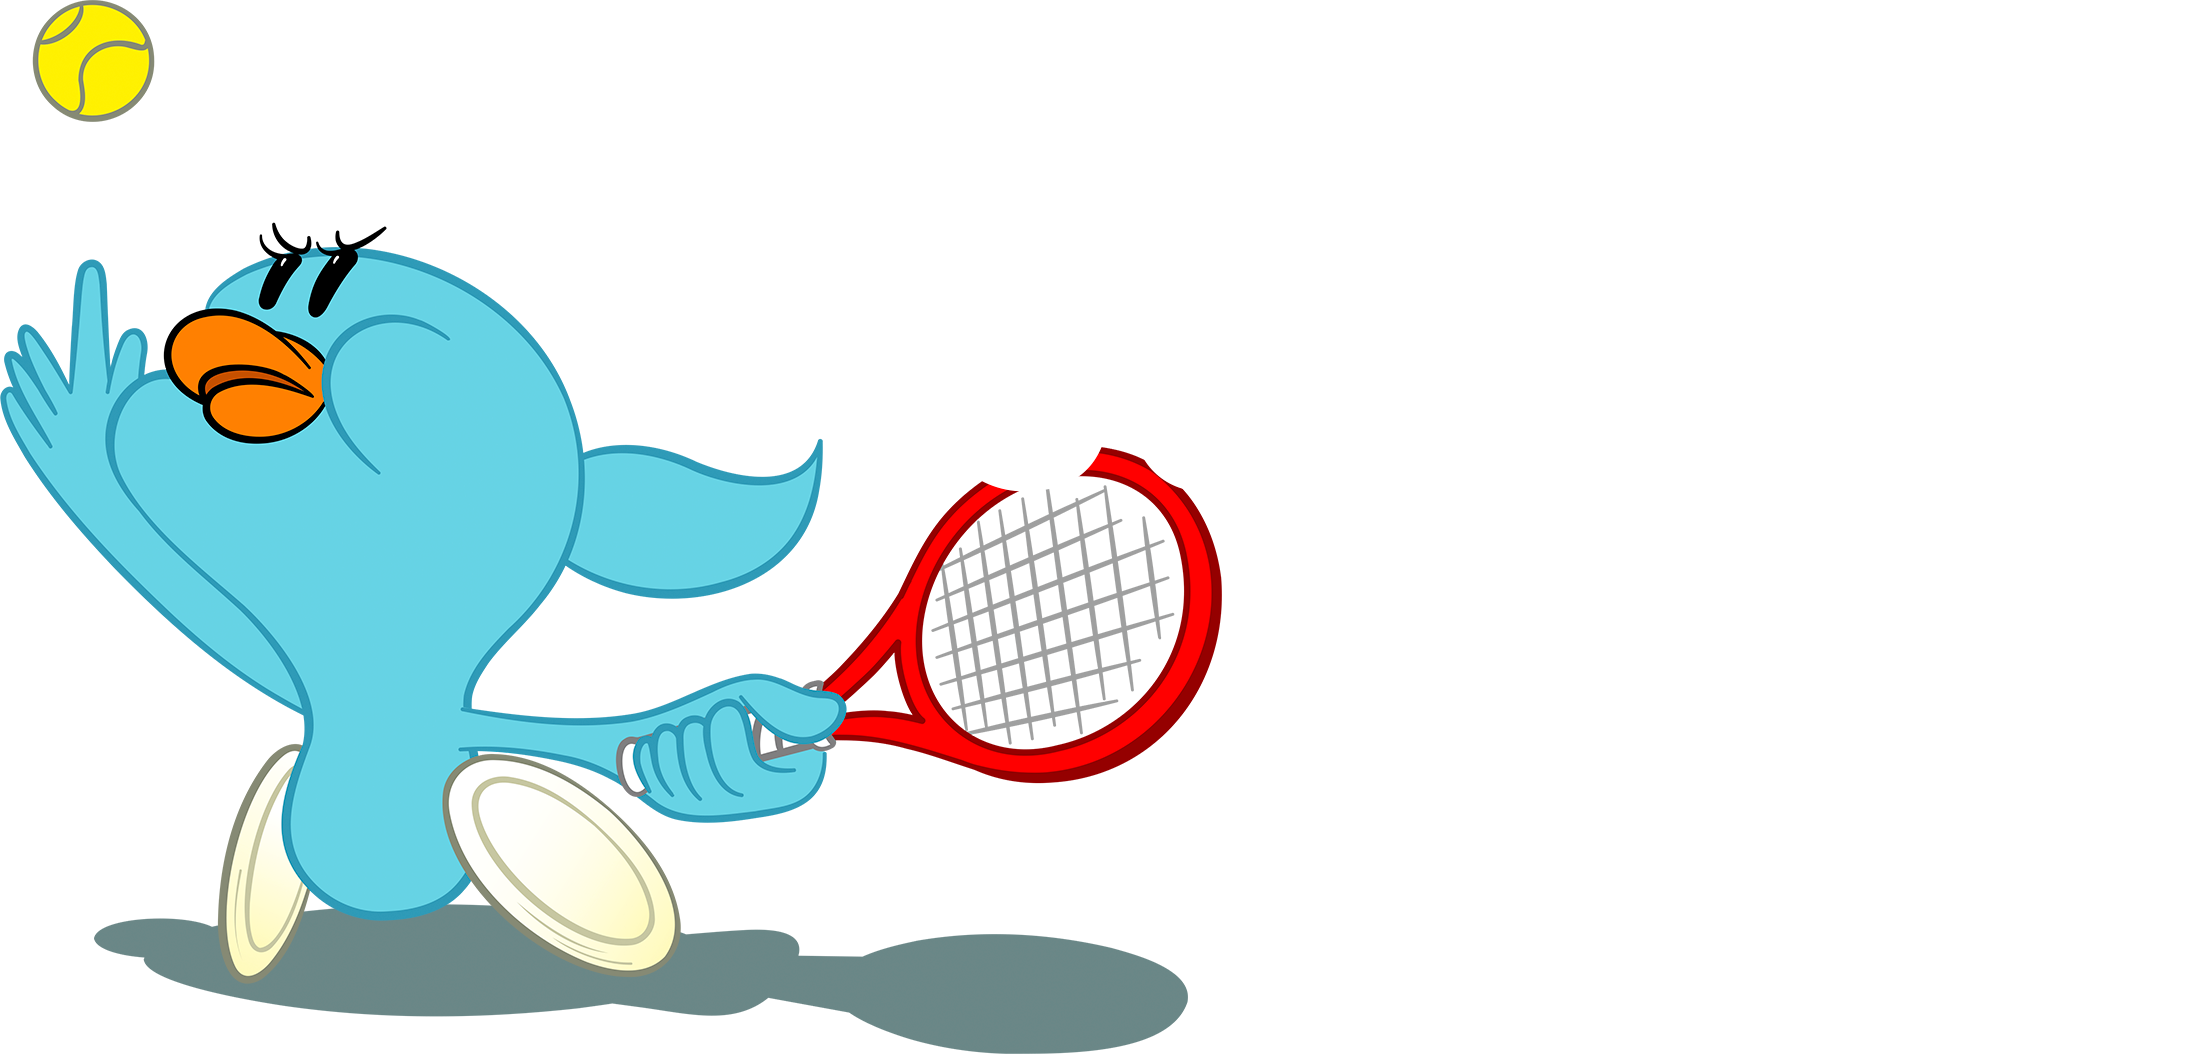 上地結⾐選⼿の公式マスコットキャラクター Go! Karmy